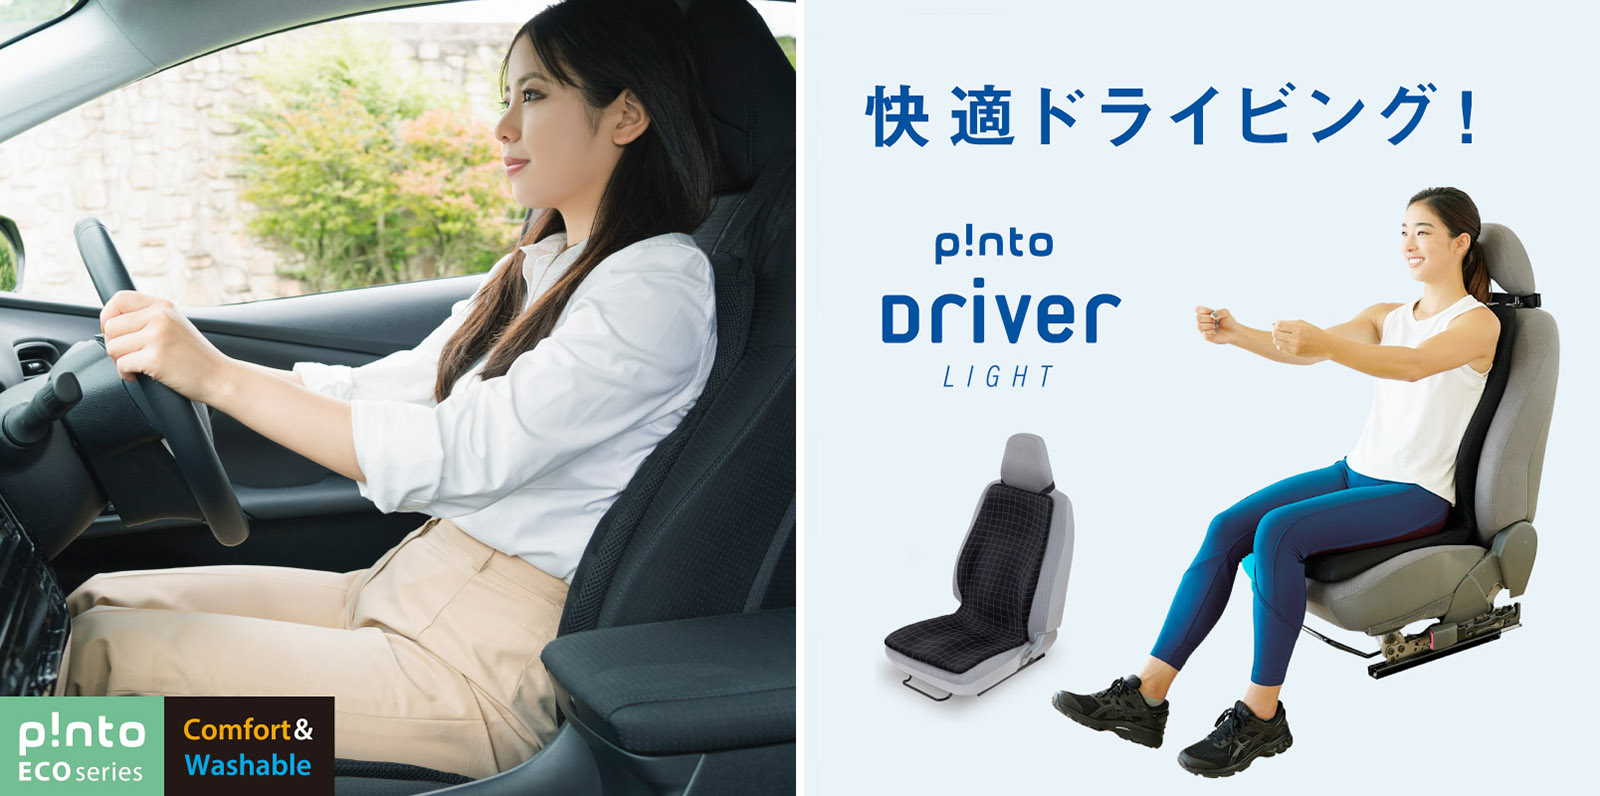 p!nto driver light